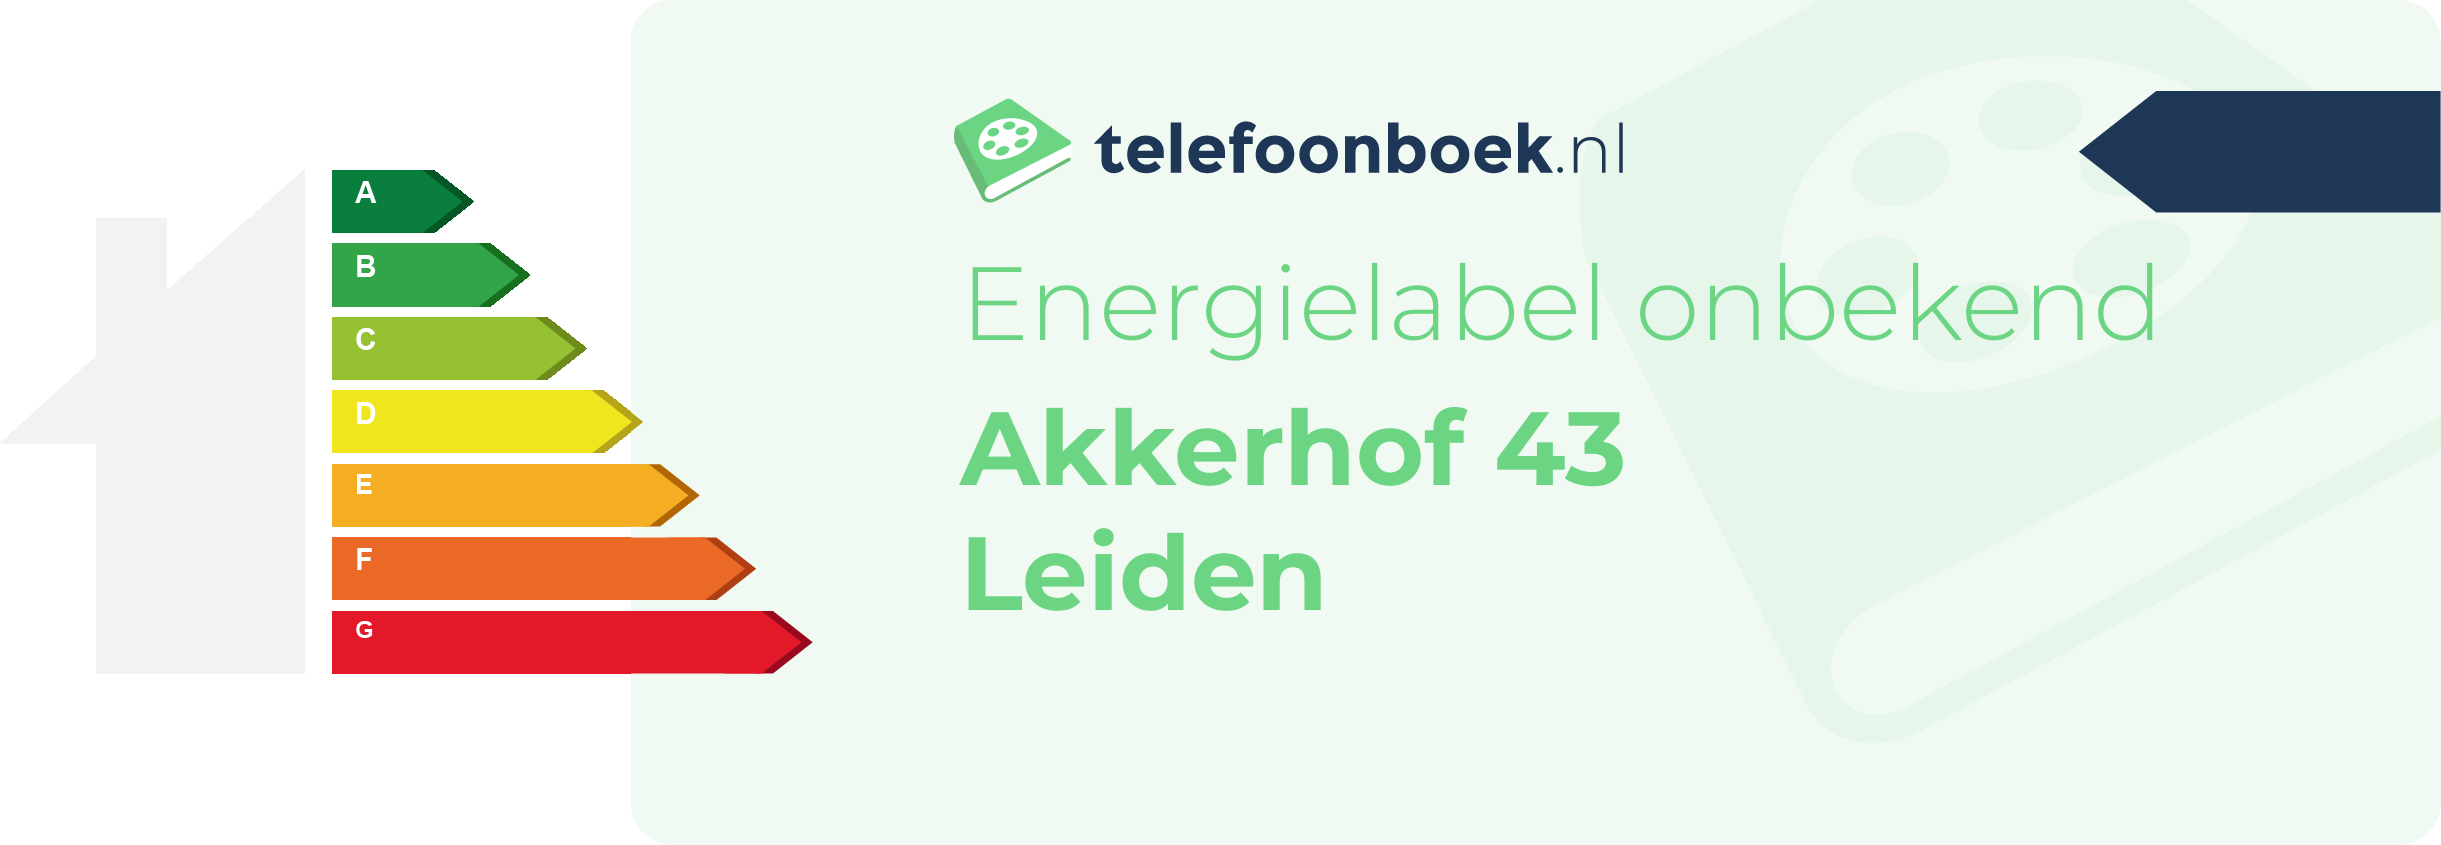 Energielabel Akkerhof 43 Leiden